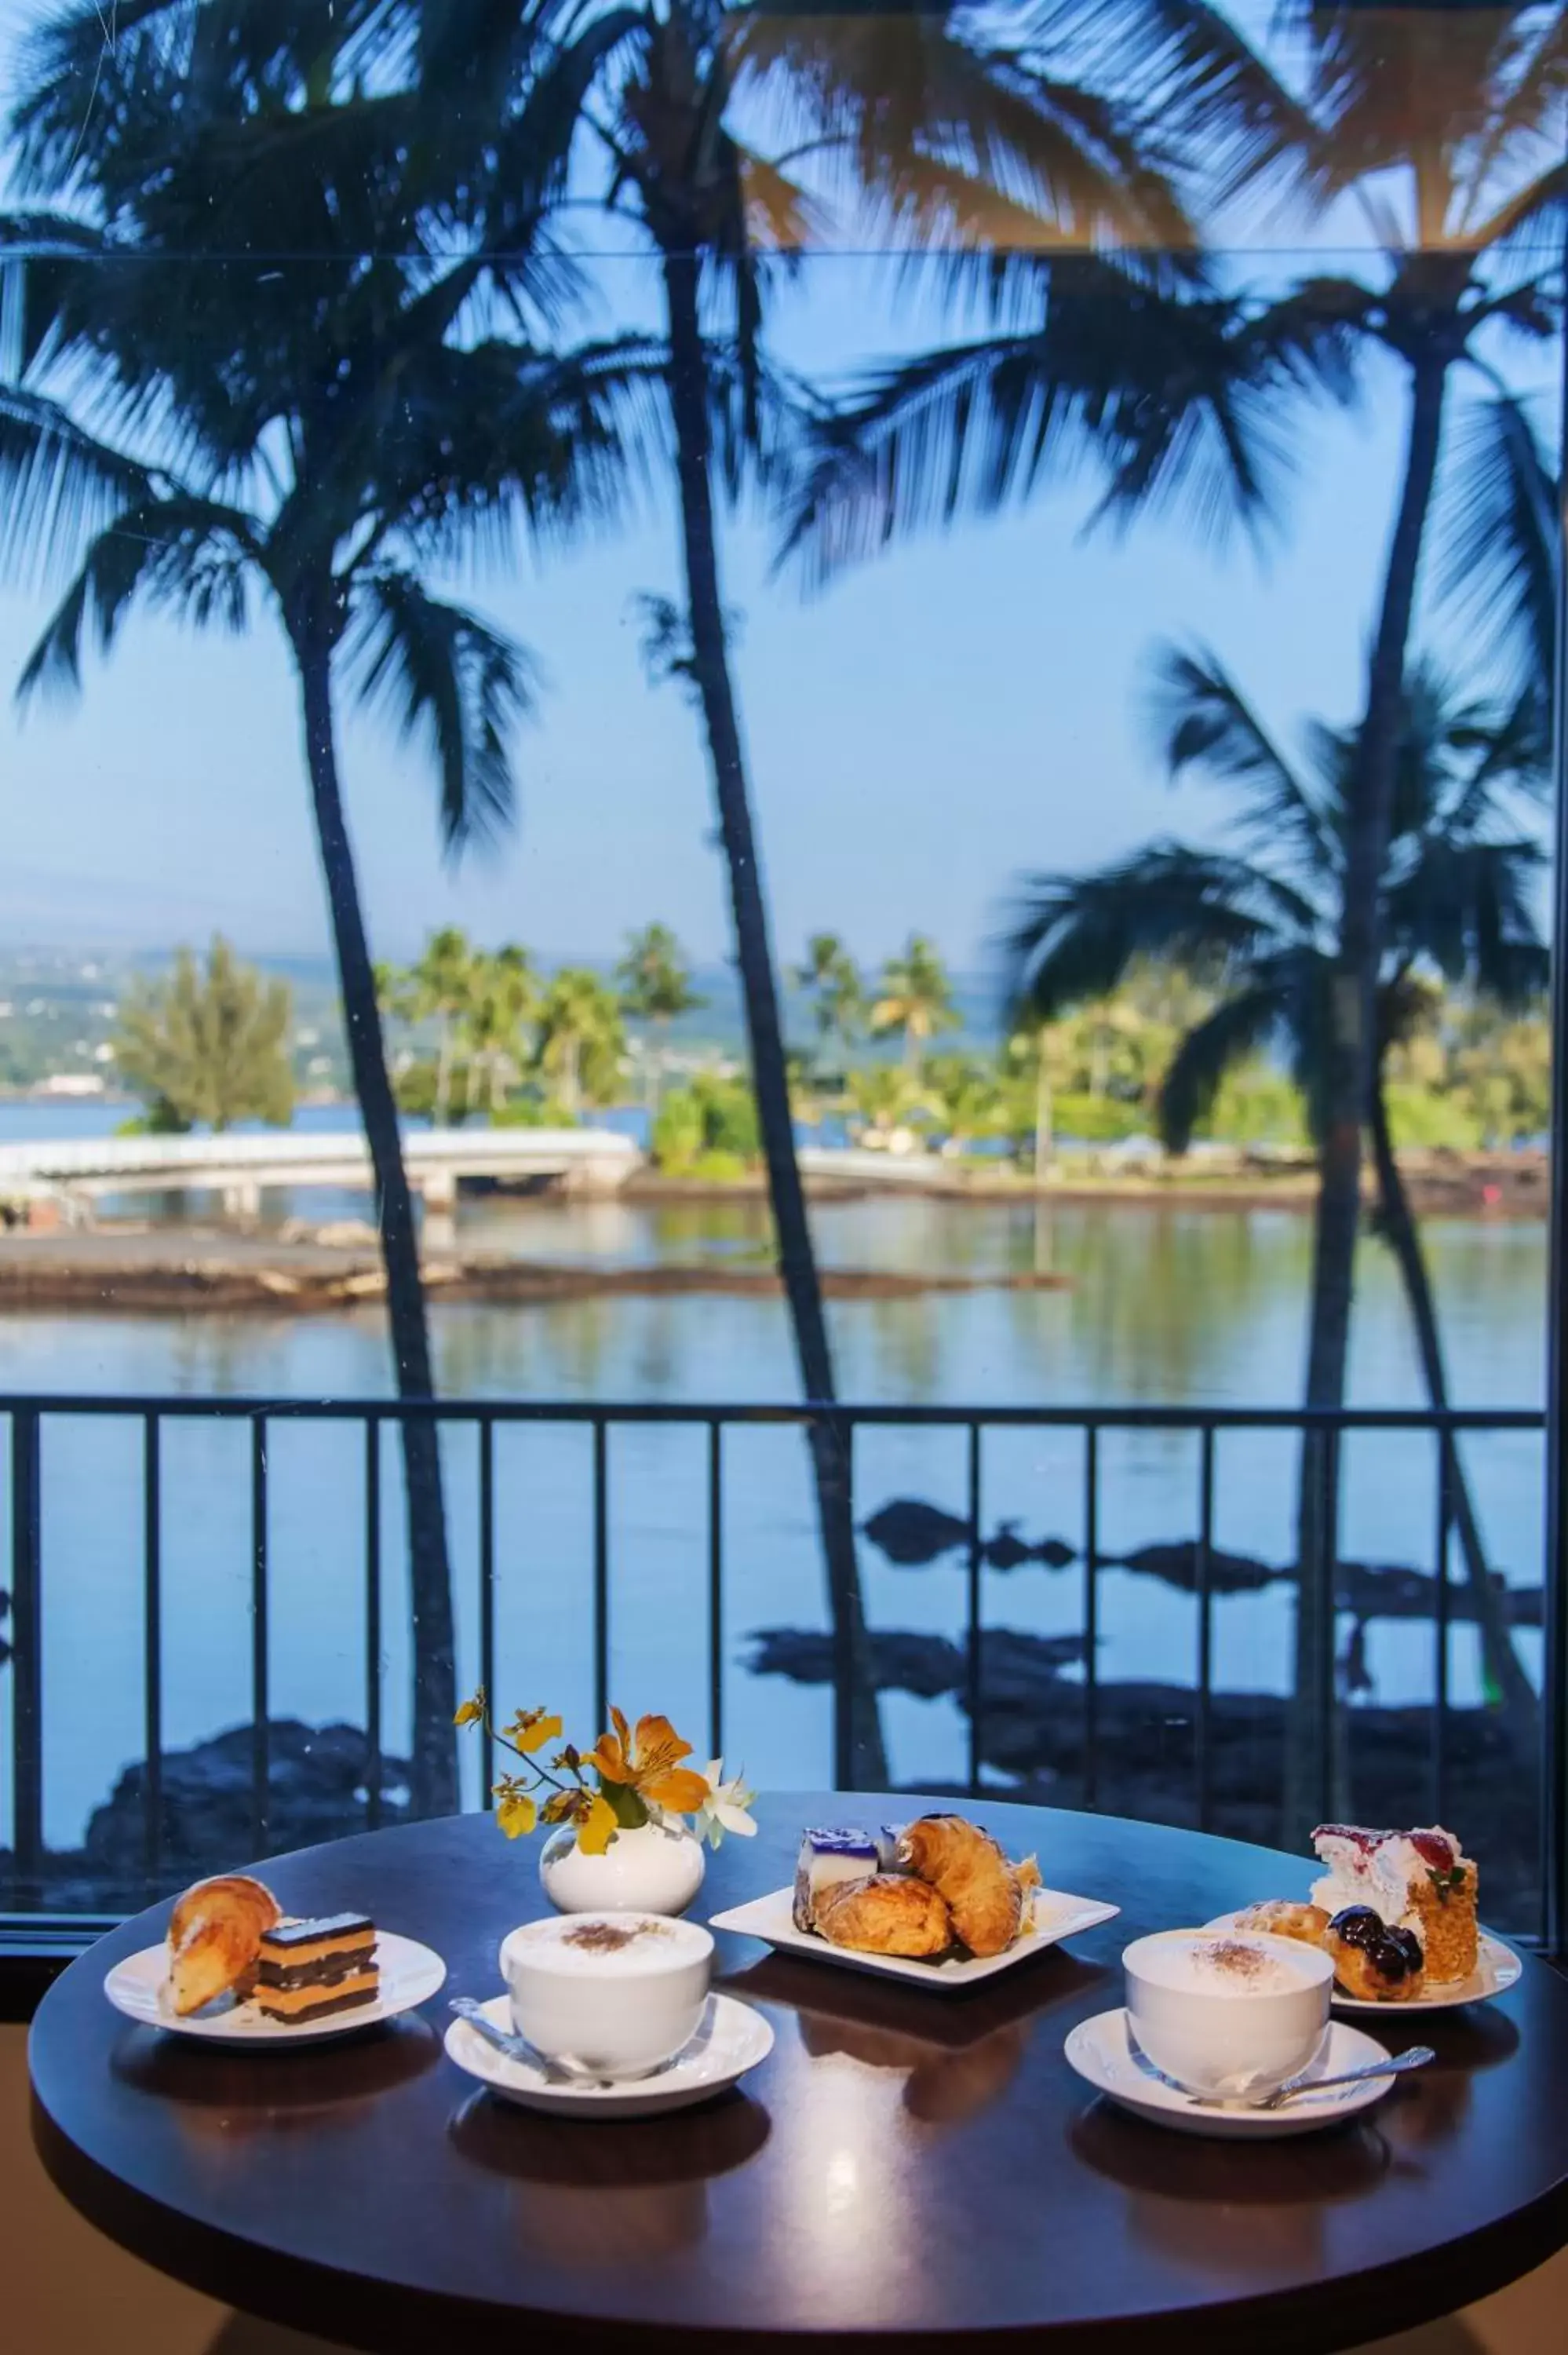 View (from property/room), Breakfast in Castle Hilo Hawaiian Hotel